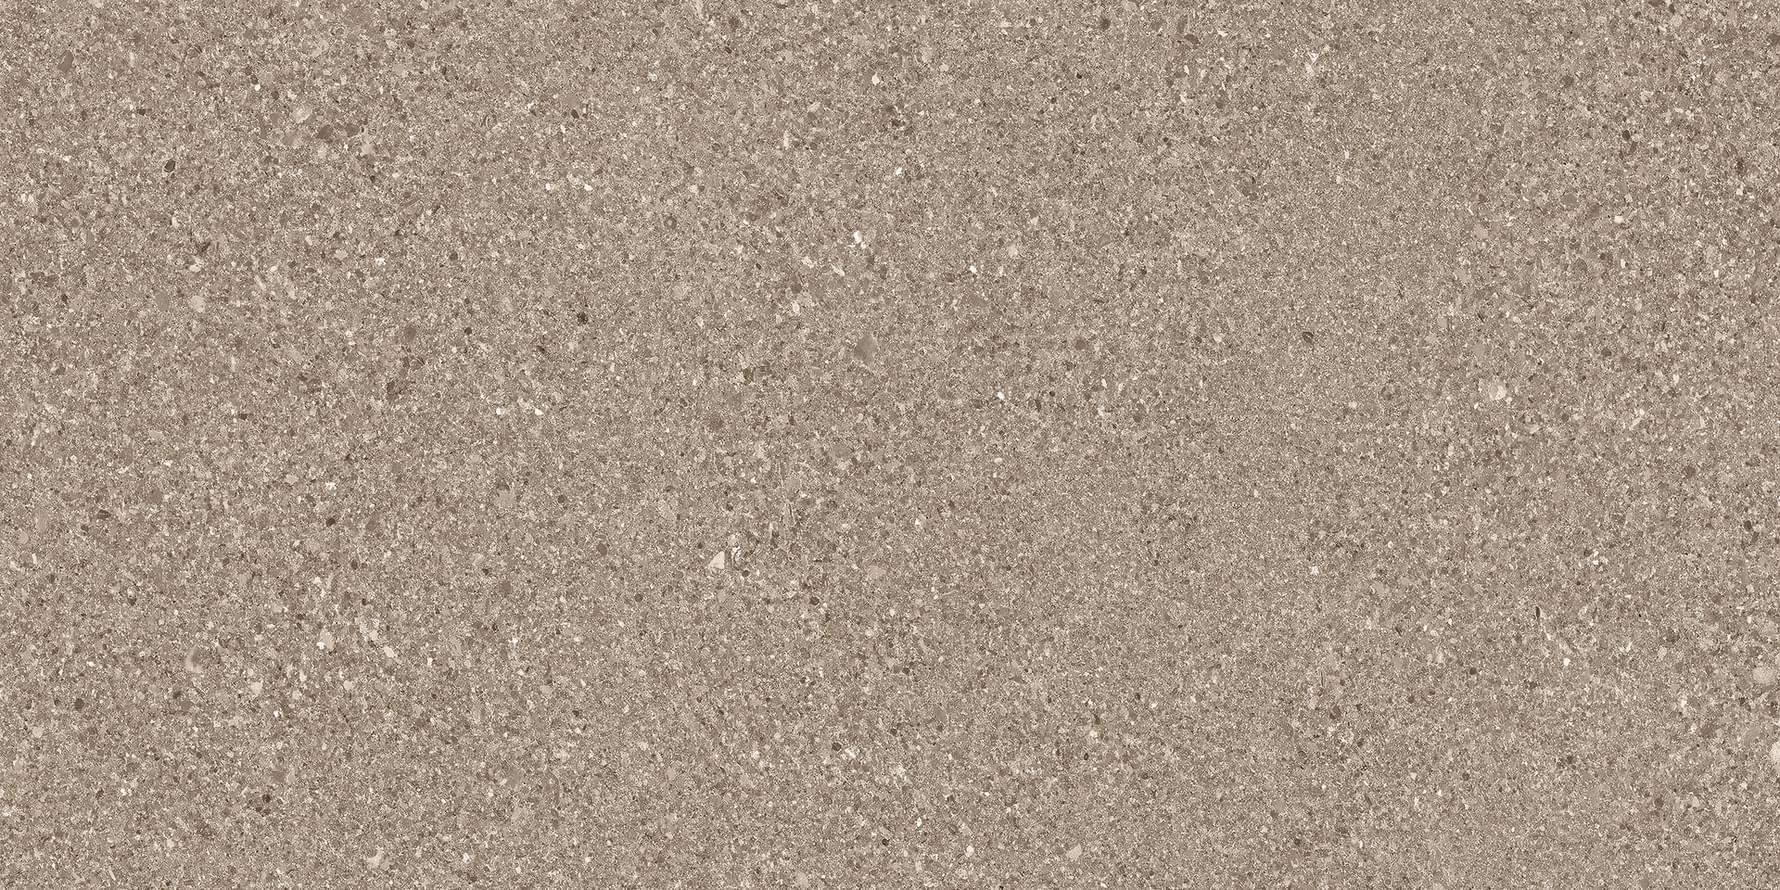 Ergon Grain Stone Taupe Fine Grain Tecnica Antislip R11 30x60